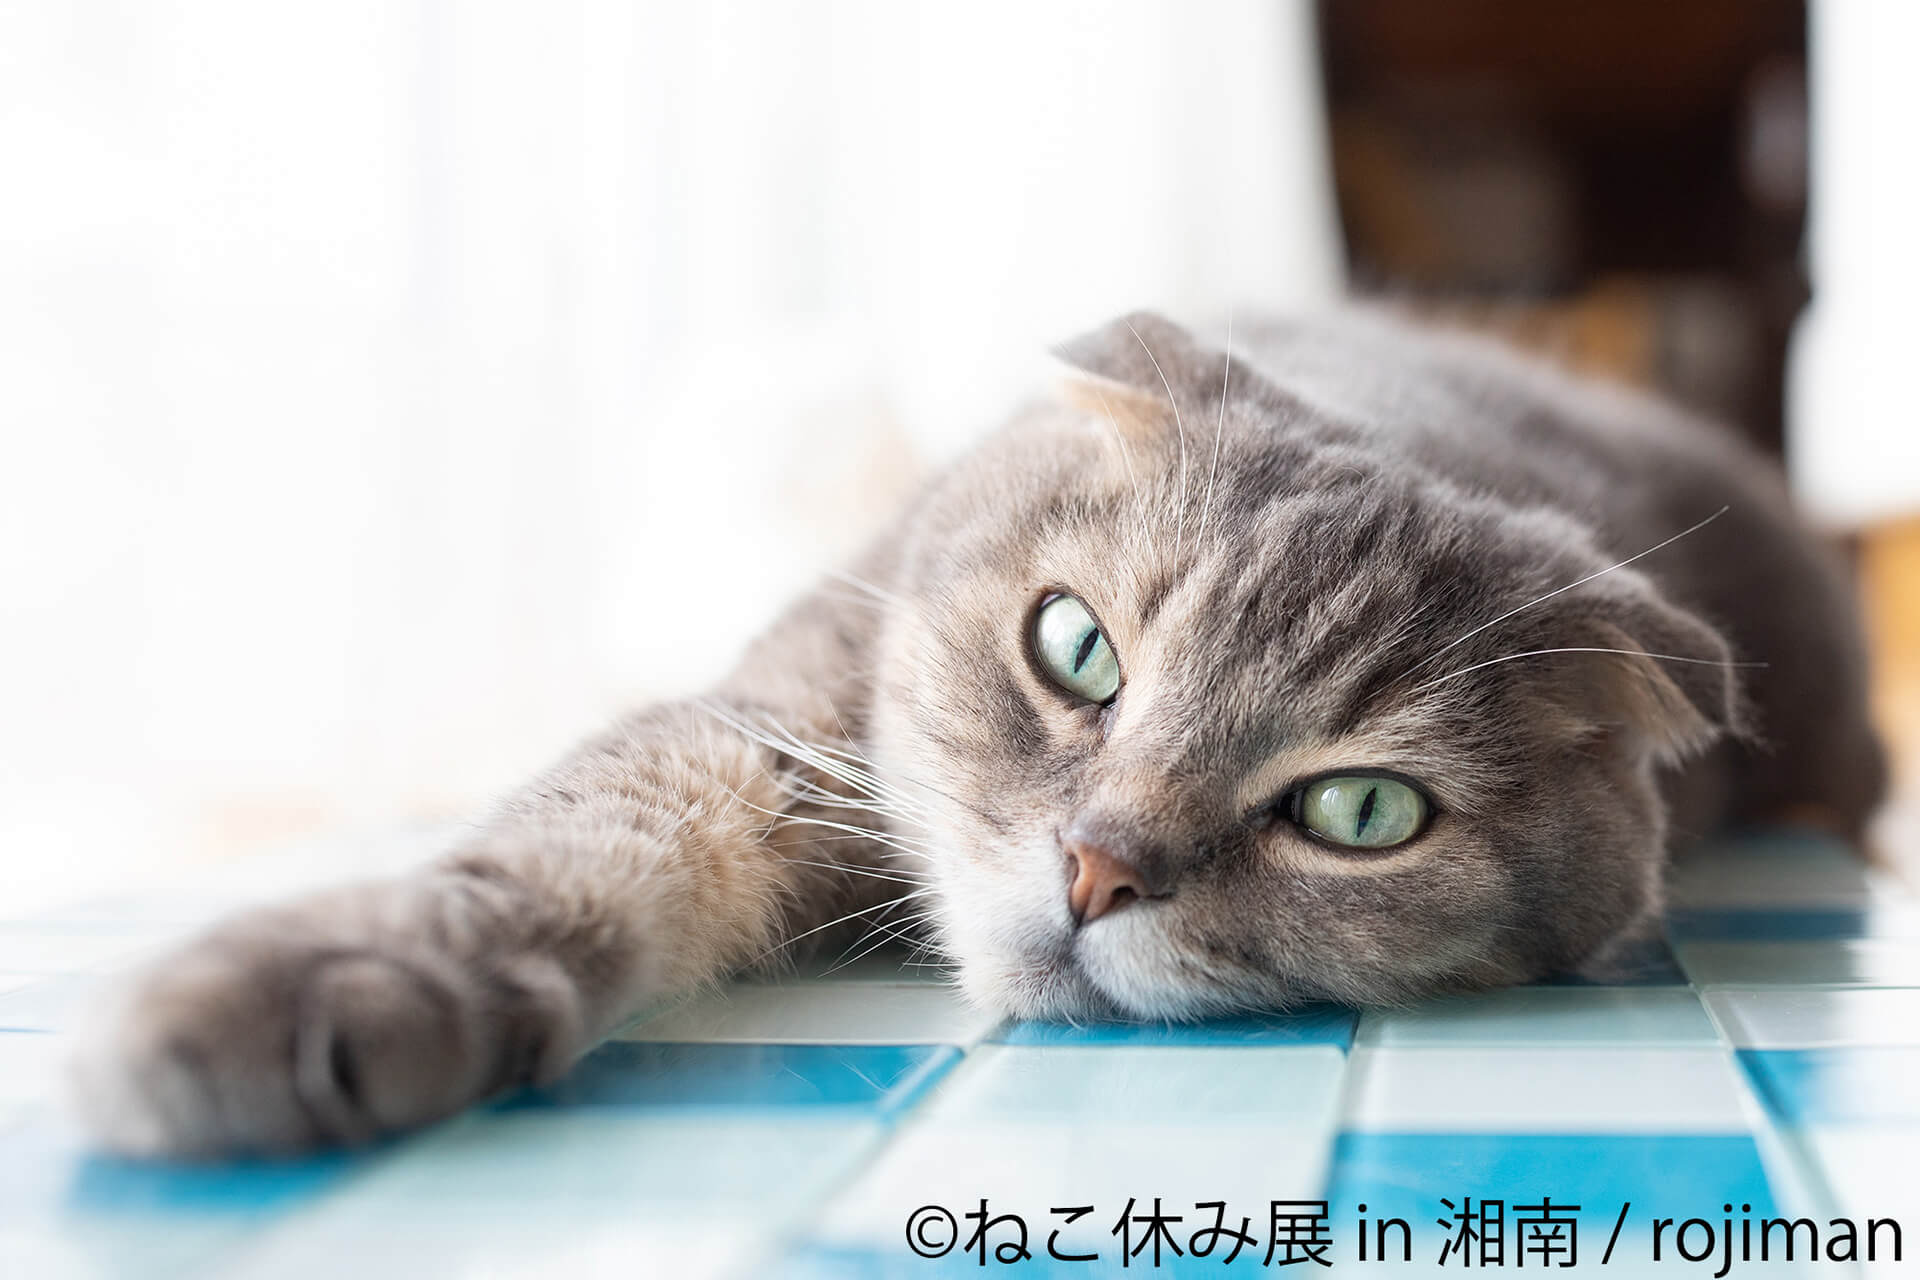 この写真はねこ休み展 in 湘南の展示作品で、まどろむ猫です